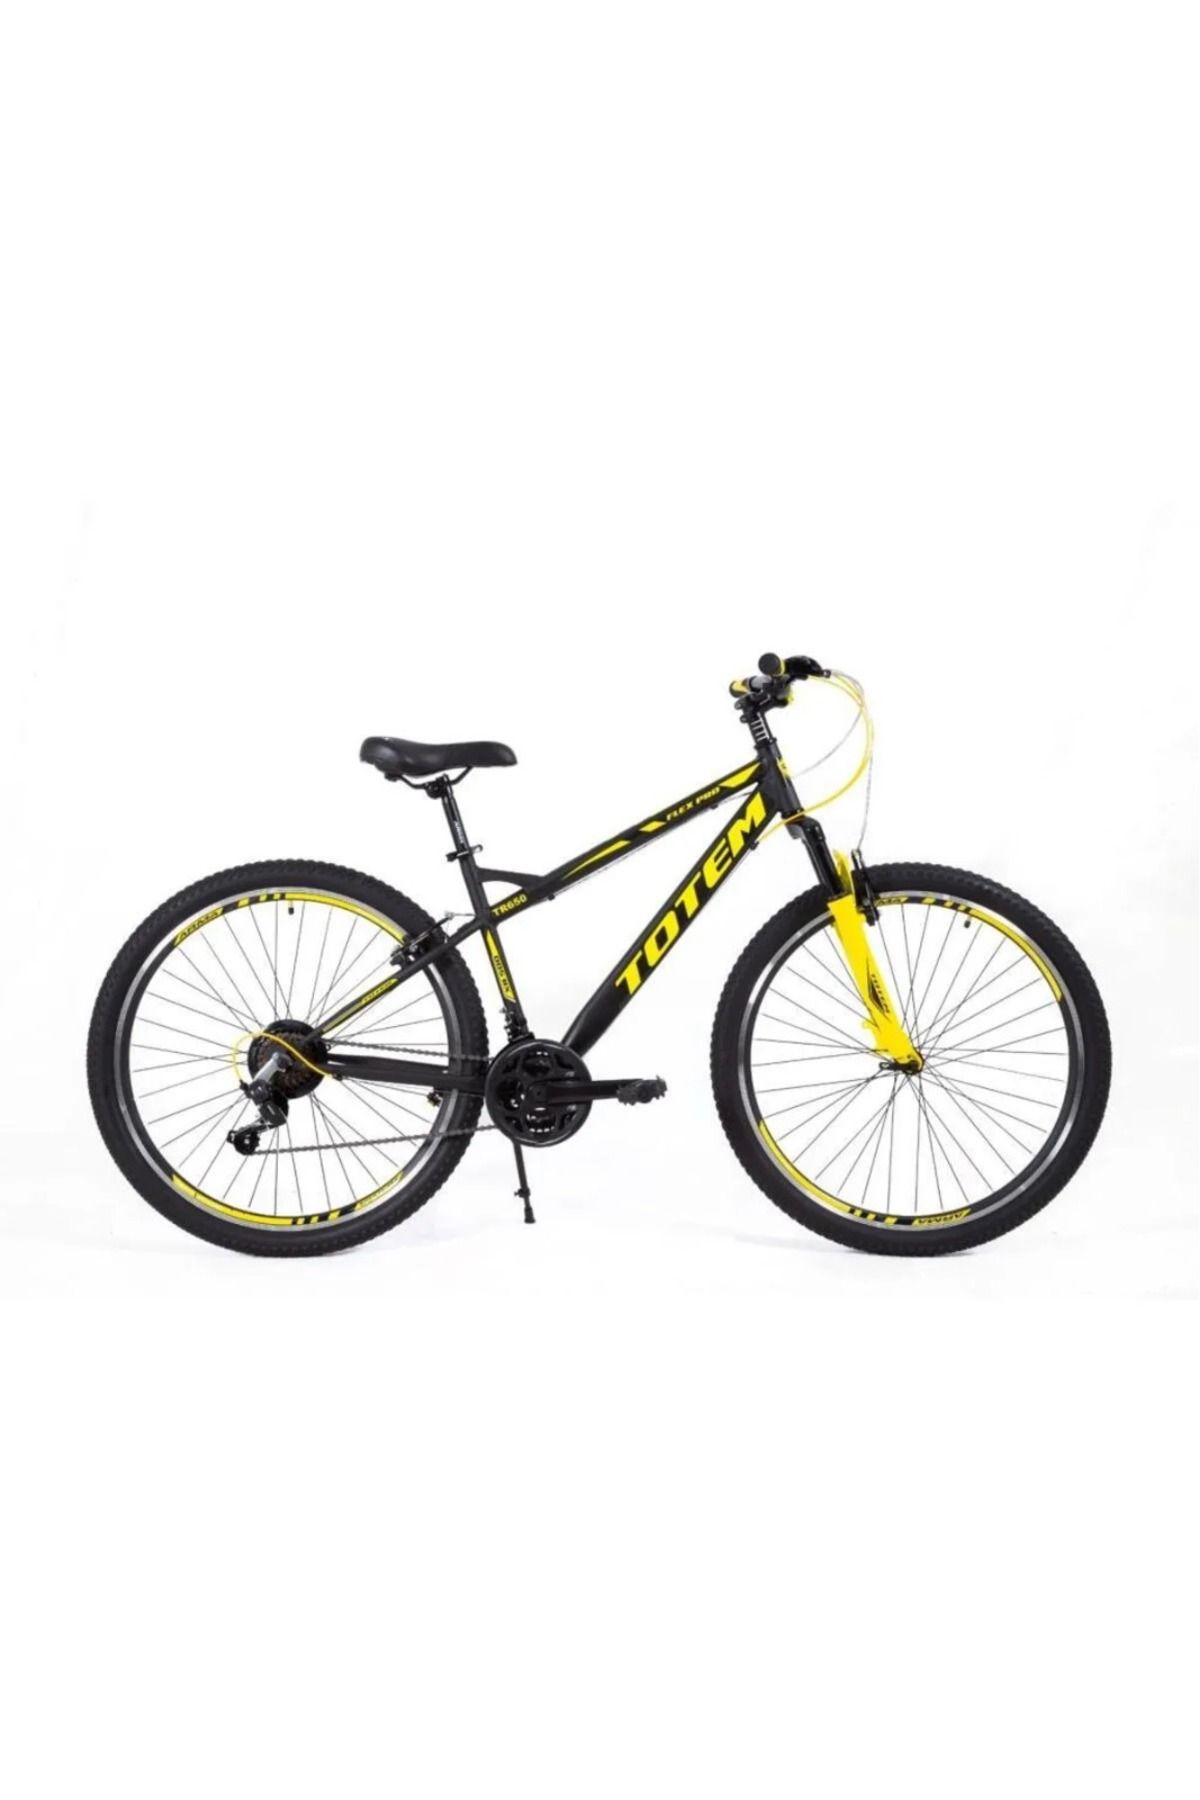 Acr Totem Flex Pro Xr400 27,5 Jant Bisiklet